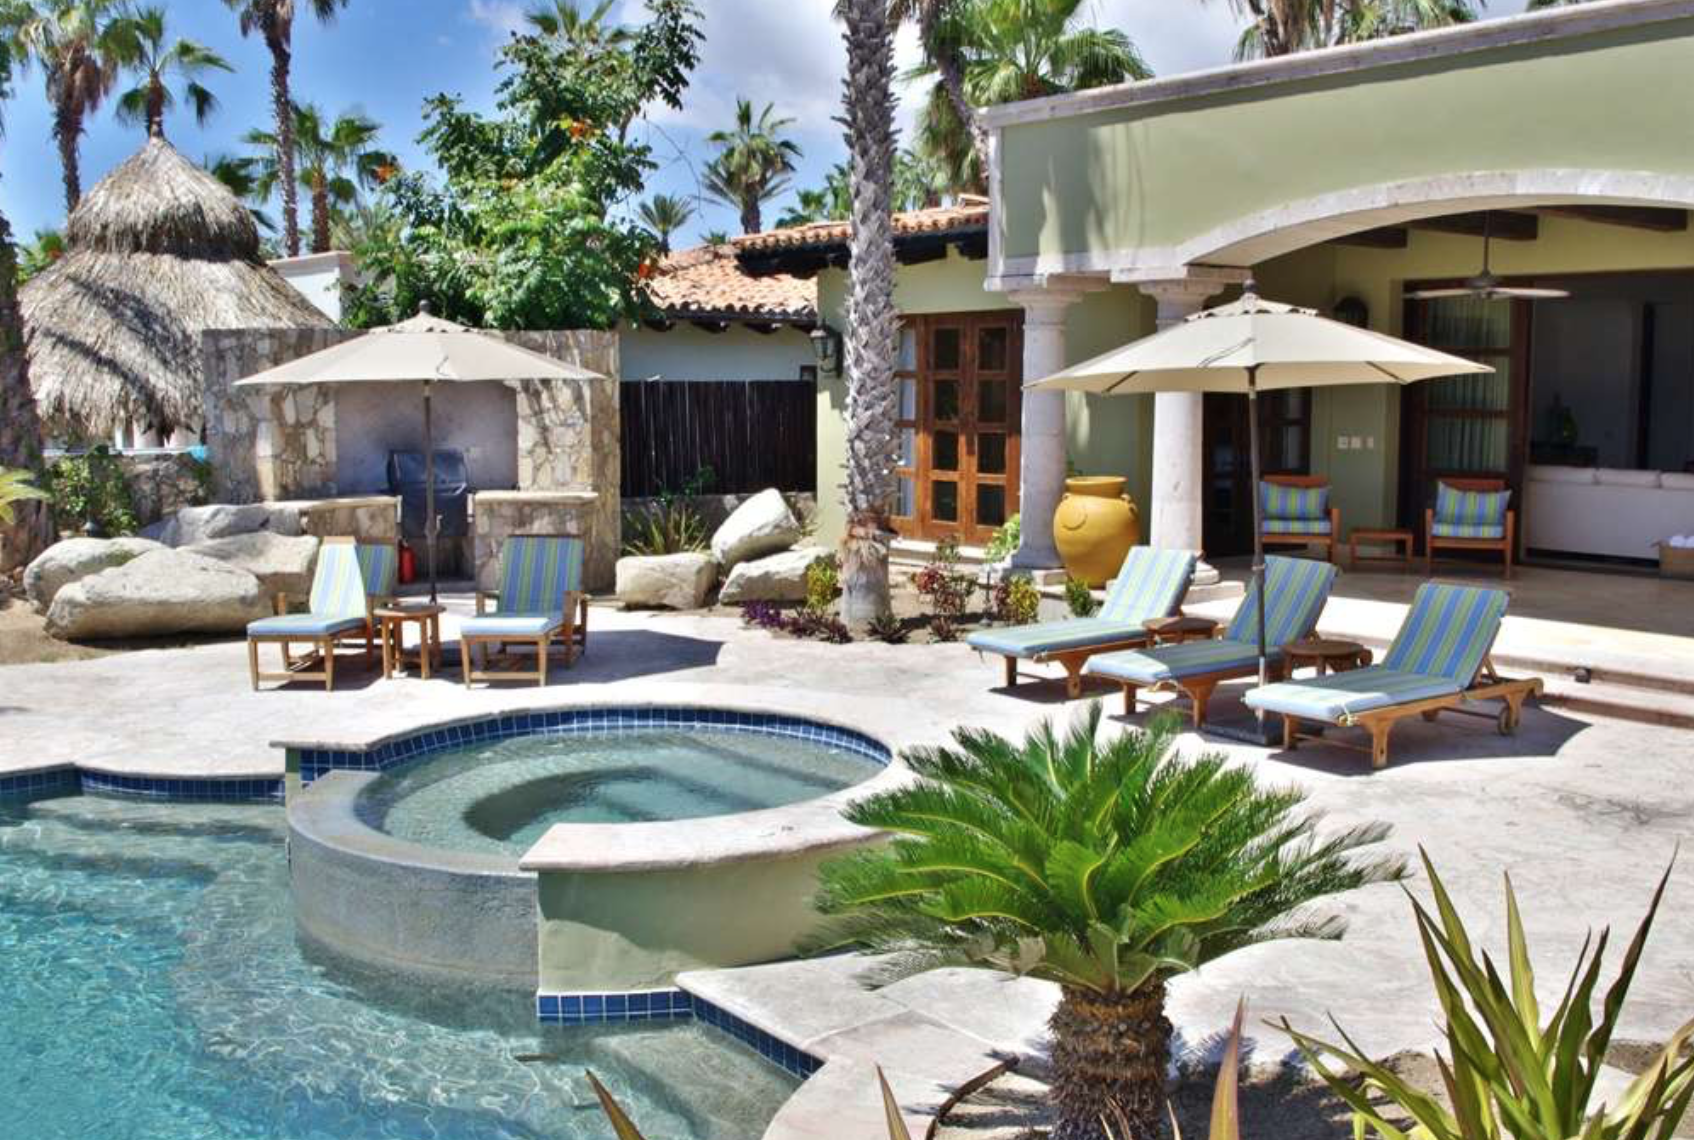 Stay At Casa Maravillas Vacation Rental Located at CABO SAN LUCAS, BAJA CALIFORNIA SUR, 23400